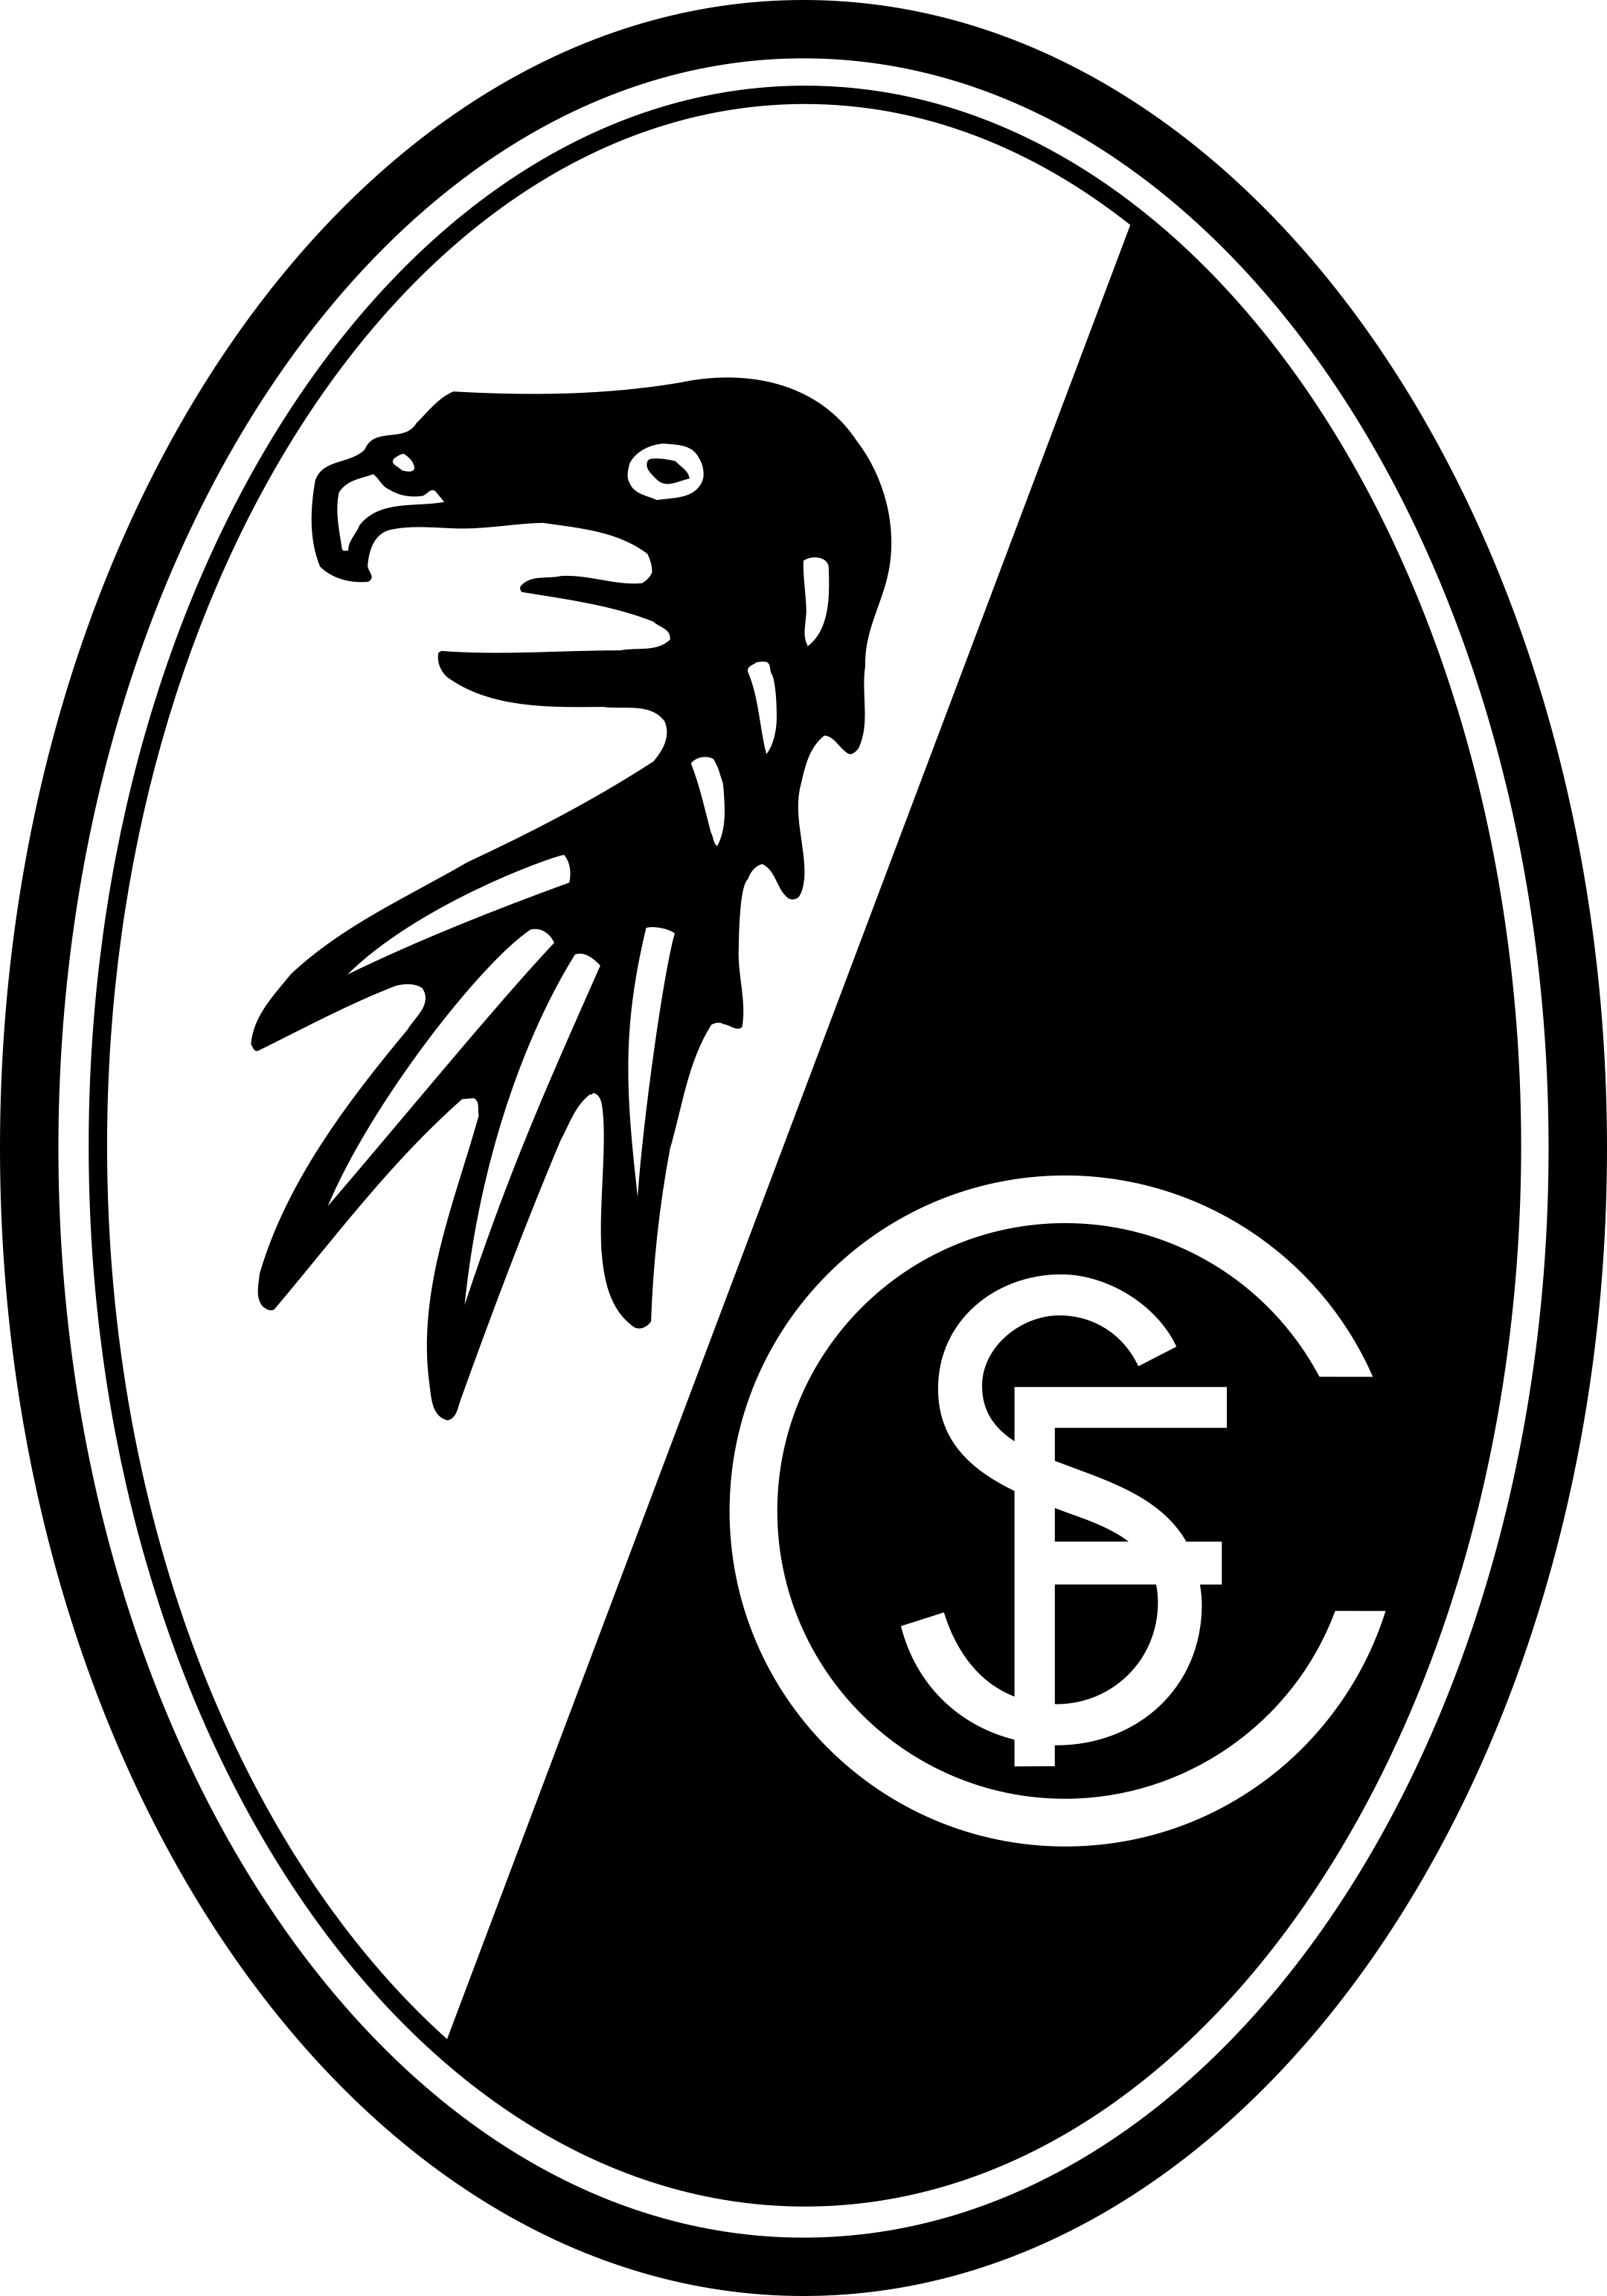 sc freiburg logo 1 - SC Freiburg Logo